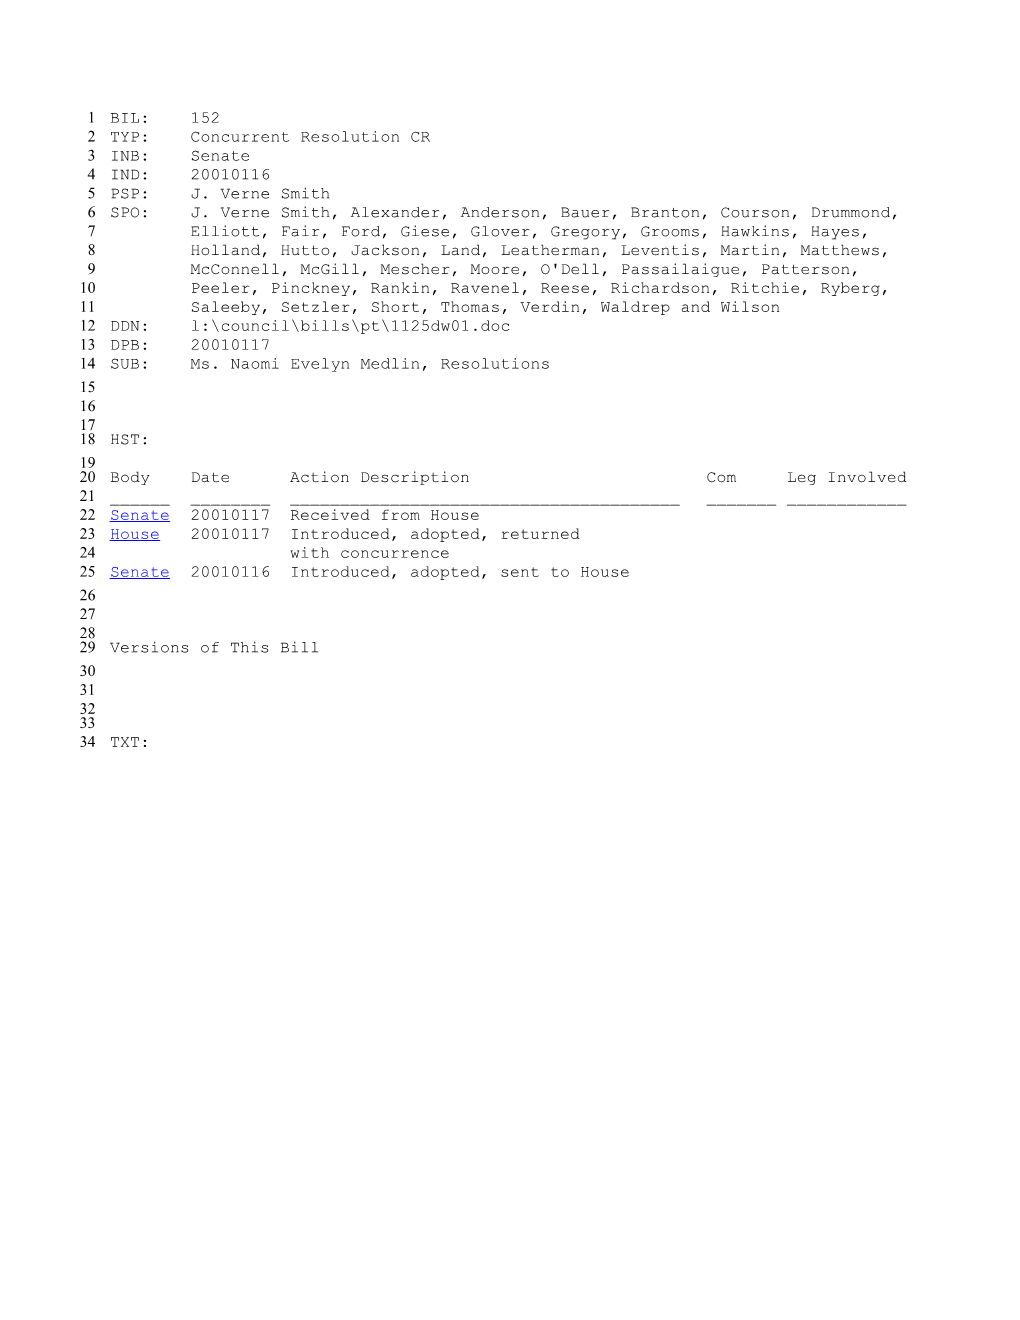 2001-2002 Bill 152: Ms. Naomi Evelyn Medlin, Resolutions - South Carolina Legislature Online